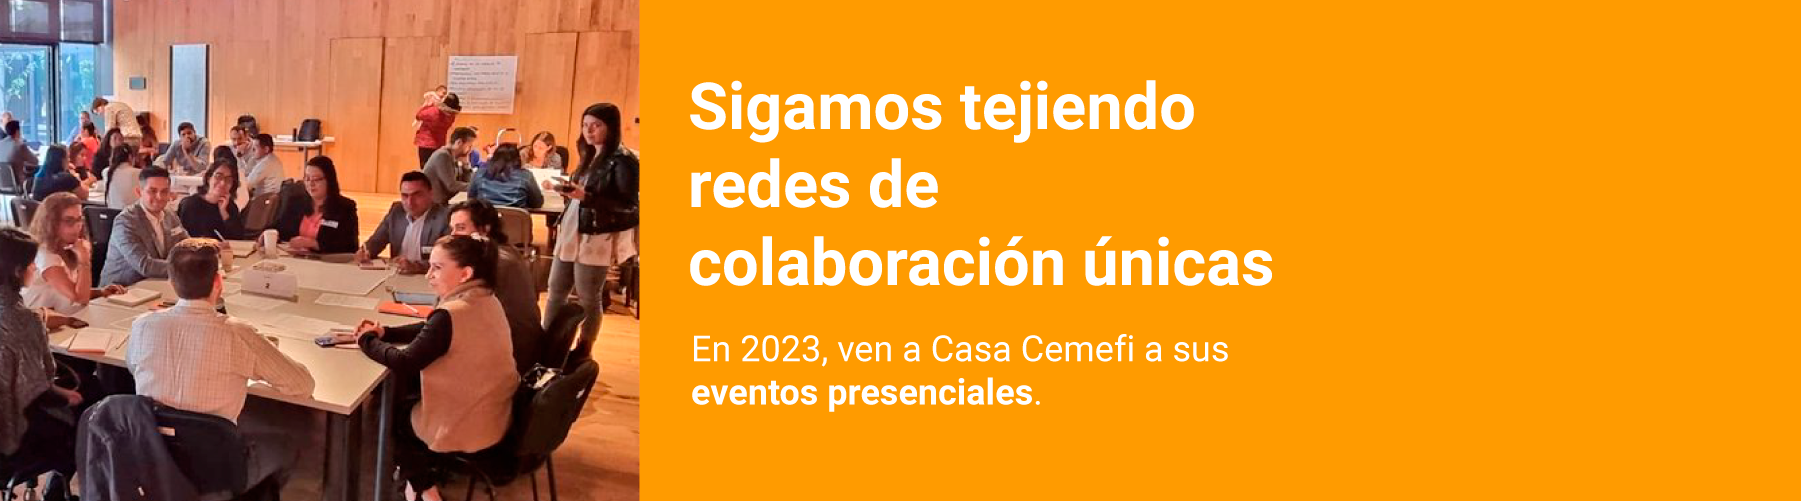 Volvamos a tejer redes de colaboración únicas de los eventos presenciales de Cemefi. En 2023, ¡Te esperamos en Casa Cemefi!